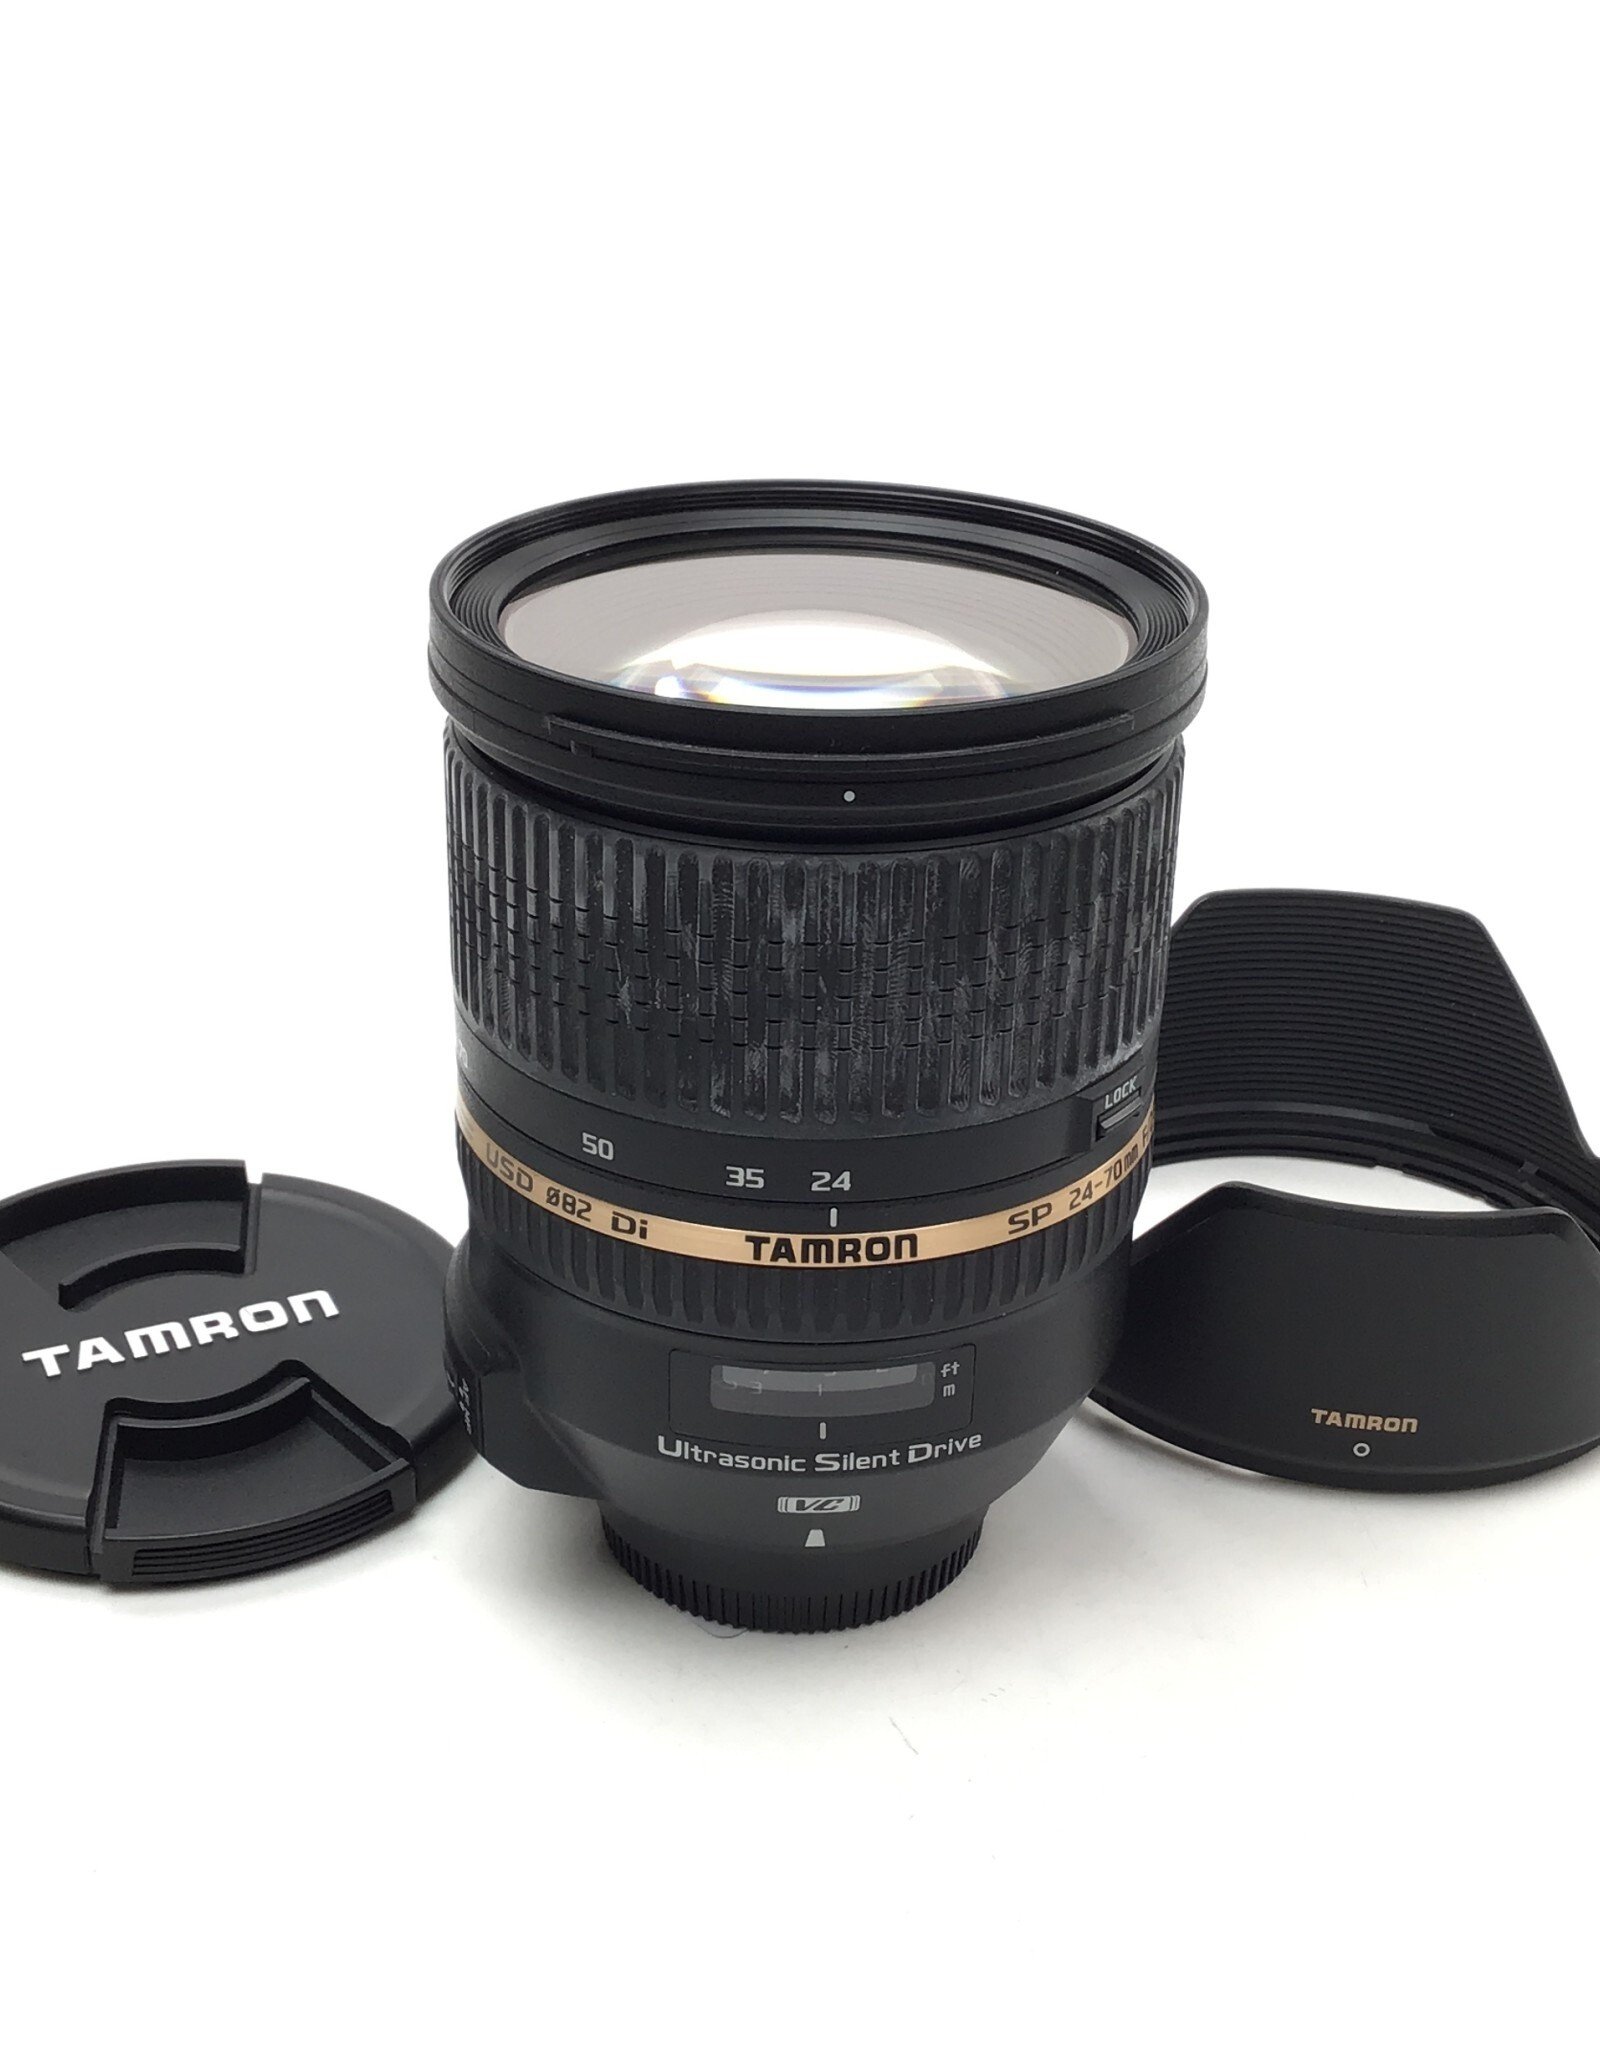 TAMRON Tamron 24-70mm f2.8 VC Lens for Nikon Used Fair